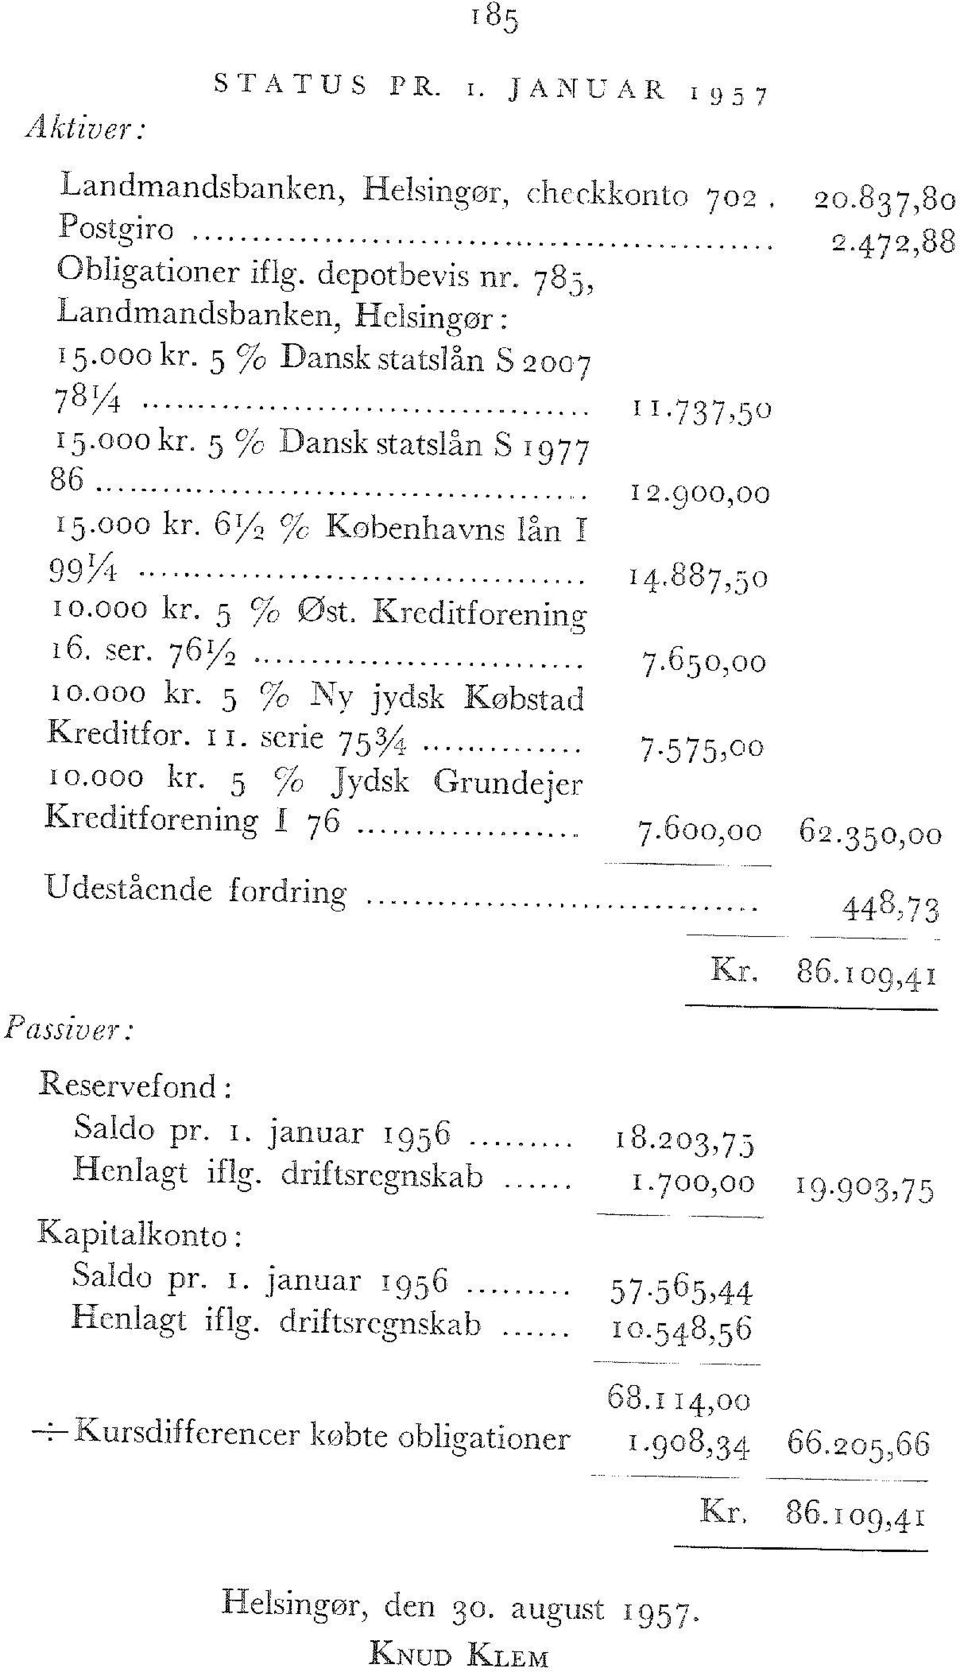 650,00 10.000 kr. 5 % Ny Jydsk Købstad Kreditfor. 11. serie 75% 7-575, 00 10.000 kr. 5 % Jydsk Grundejer Kreditforening I 76 7.600,00 62.350,00 Udestående fordring 44g?